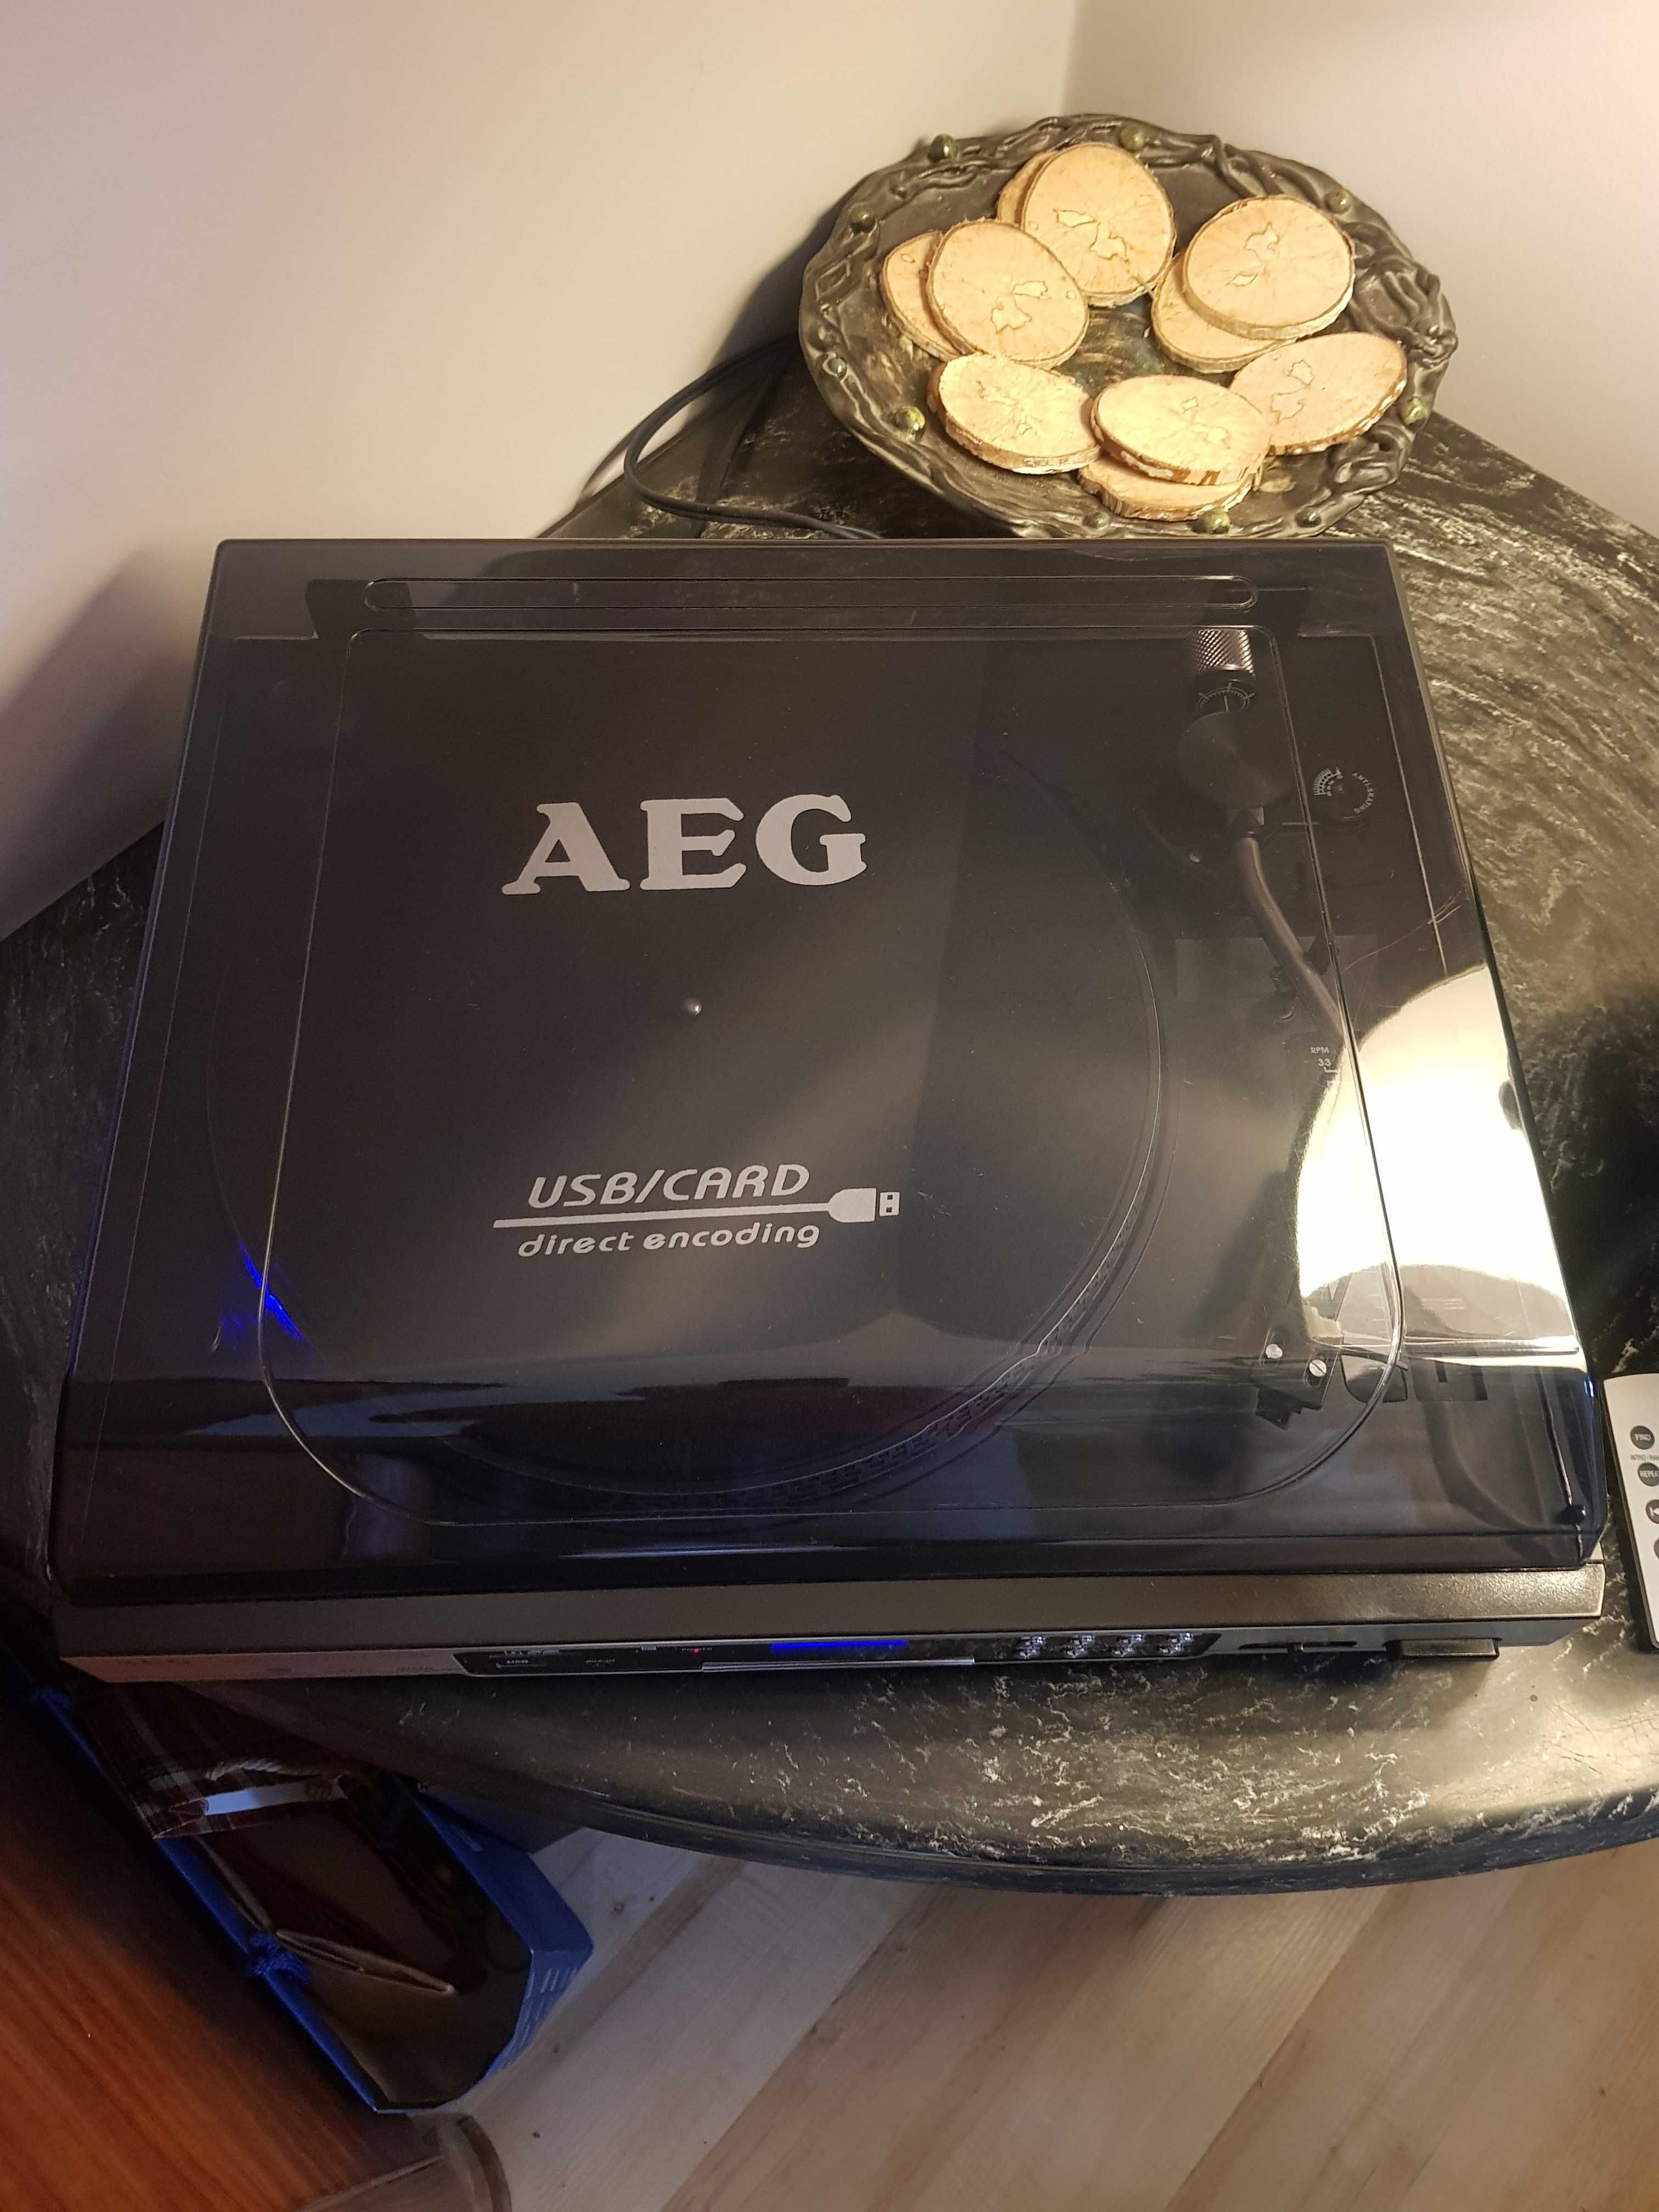 Gramofon "AEG": MC 4420 USB/SD/MMC/MP3 idealny do dygitalizowania